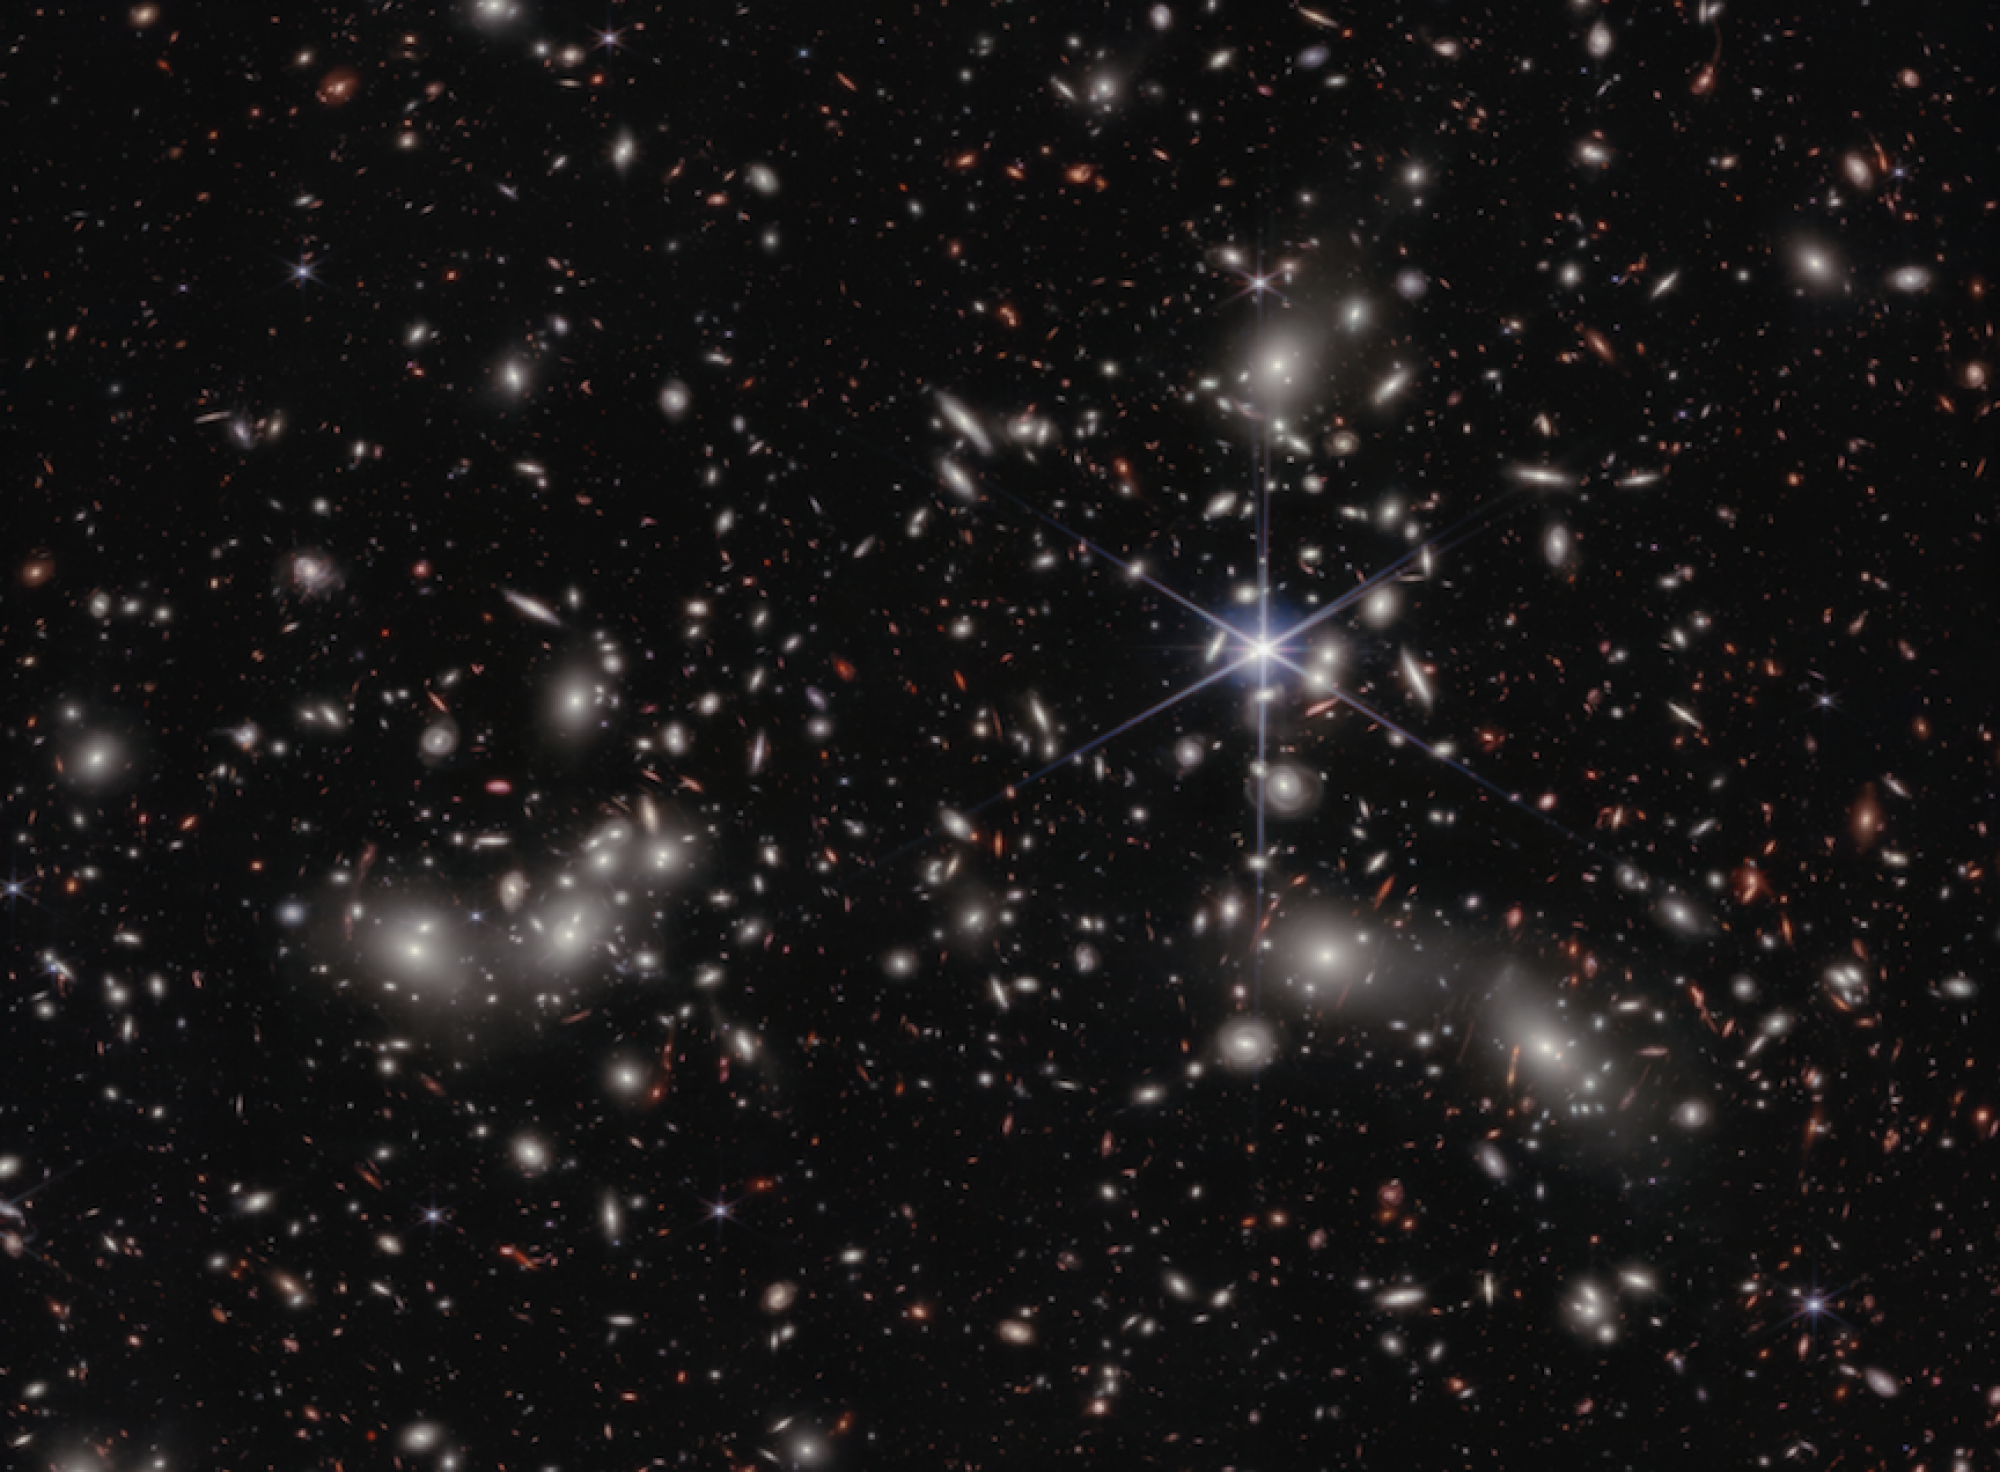 clusters of galaxies in deep space